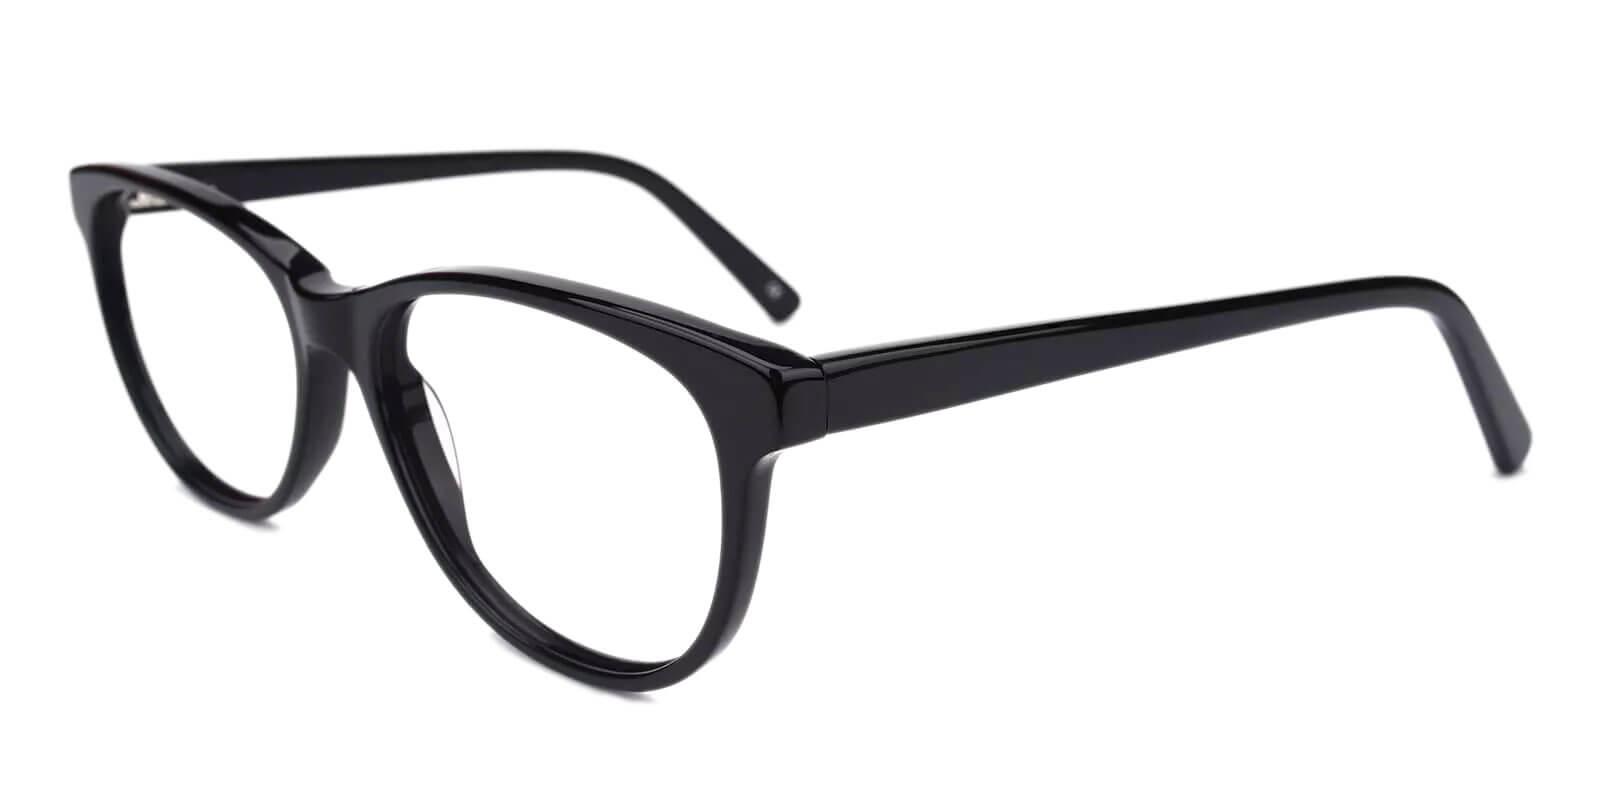 Neptune Black Acetate Eyeglasses , SpringHinges , UniversalBridgeFit Frames from ABBE Glasses